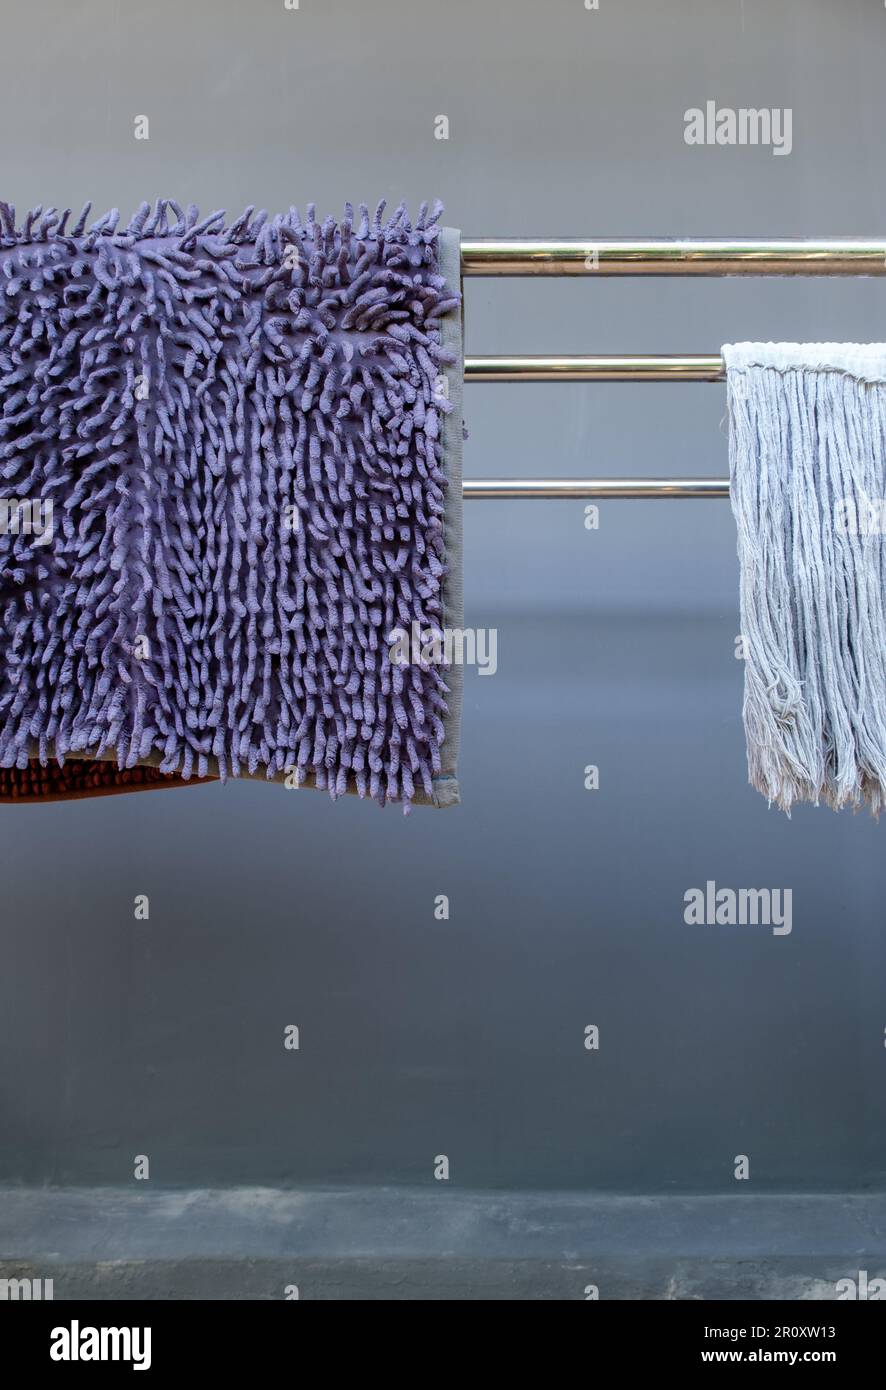 Der Reinigungsfußschaber und das Wischtuch hängen nach dem Waschen in der Nähe der Hauswand an der Metalllinie, Vorderansicht mit dem Kopierbereich Stockfoto